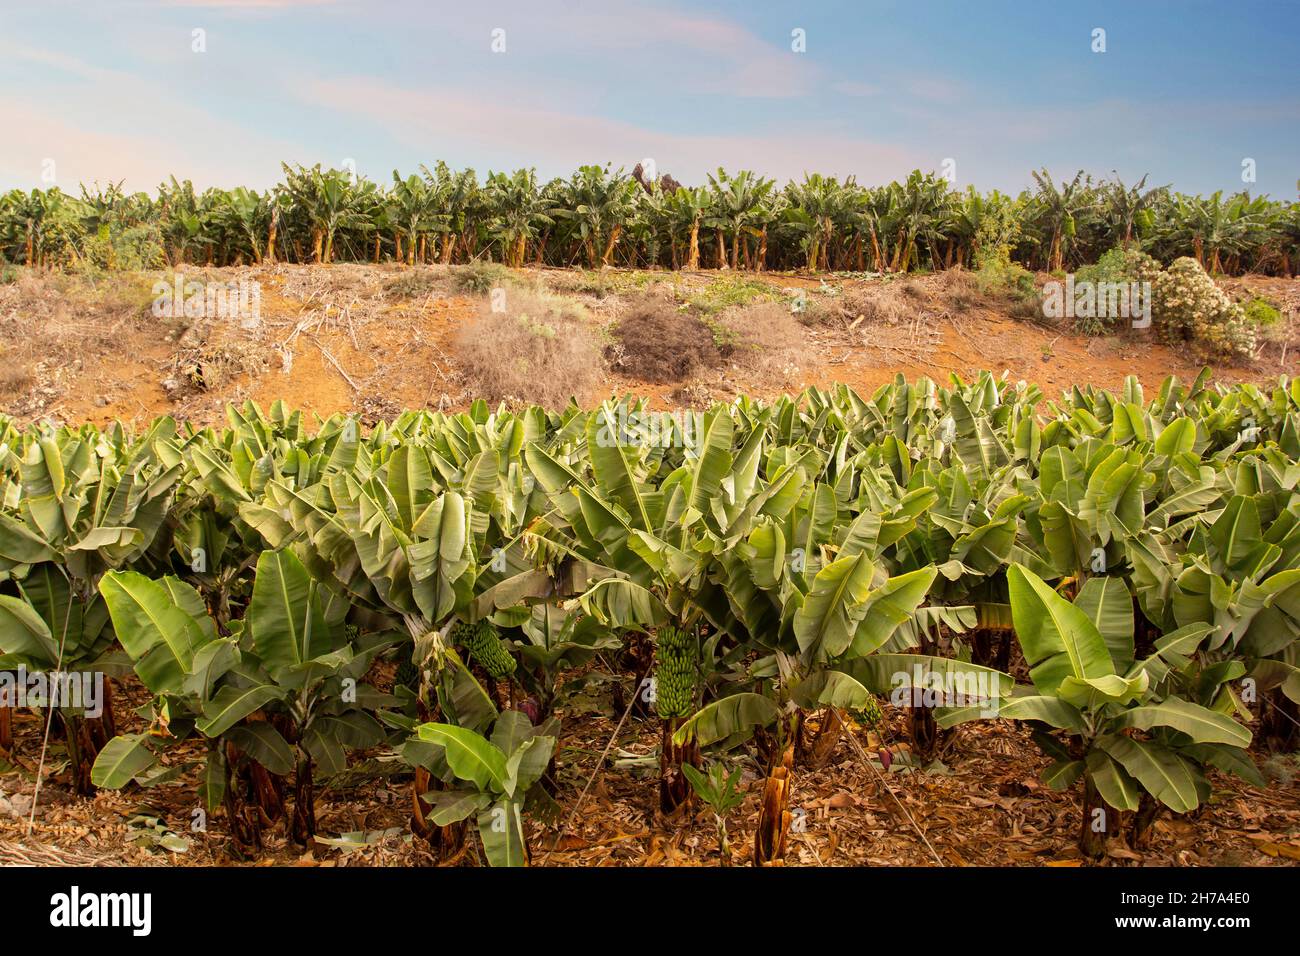 Banana trees. Banana plantation, Tenerife, Spain. Stock Photo